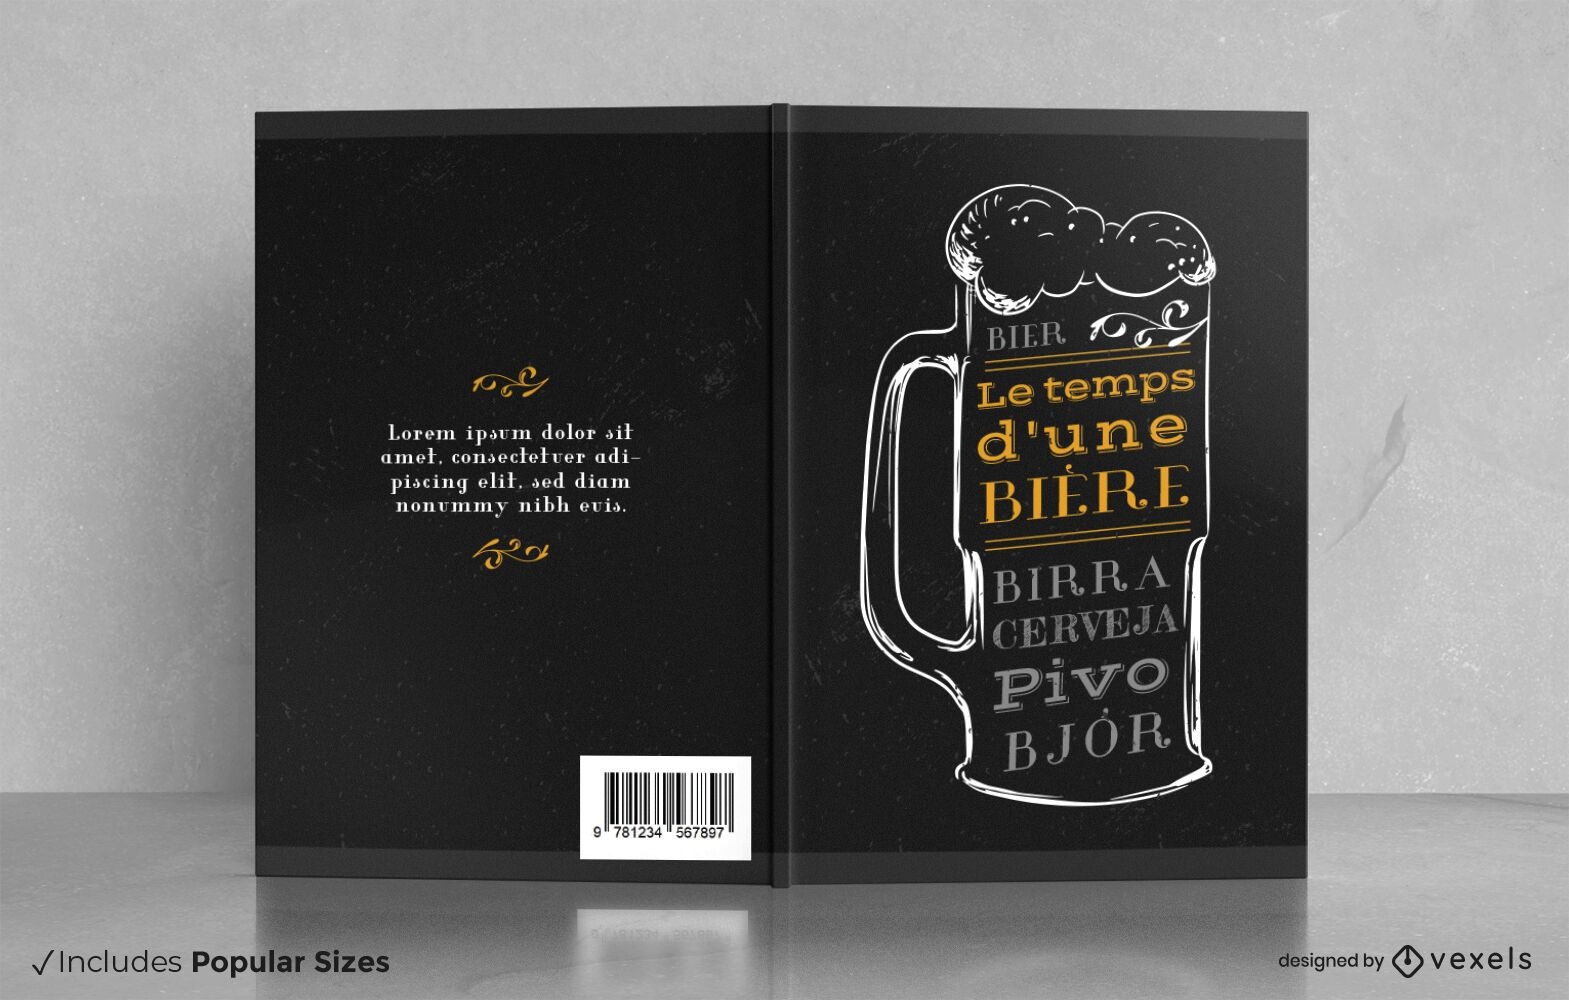 Descarga Vector De Diseño De Portada De Libro De Degustación De Bebidas De  Cerveza.